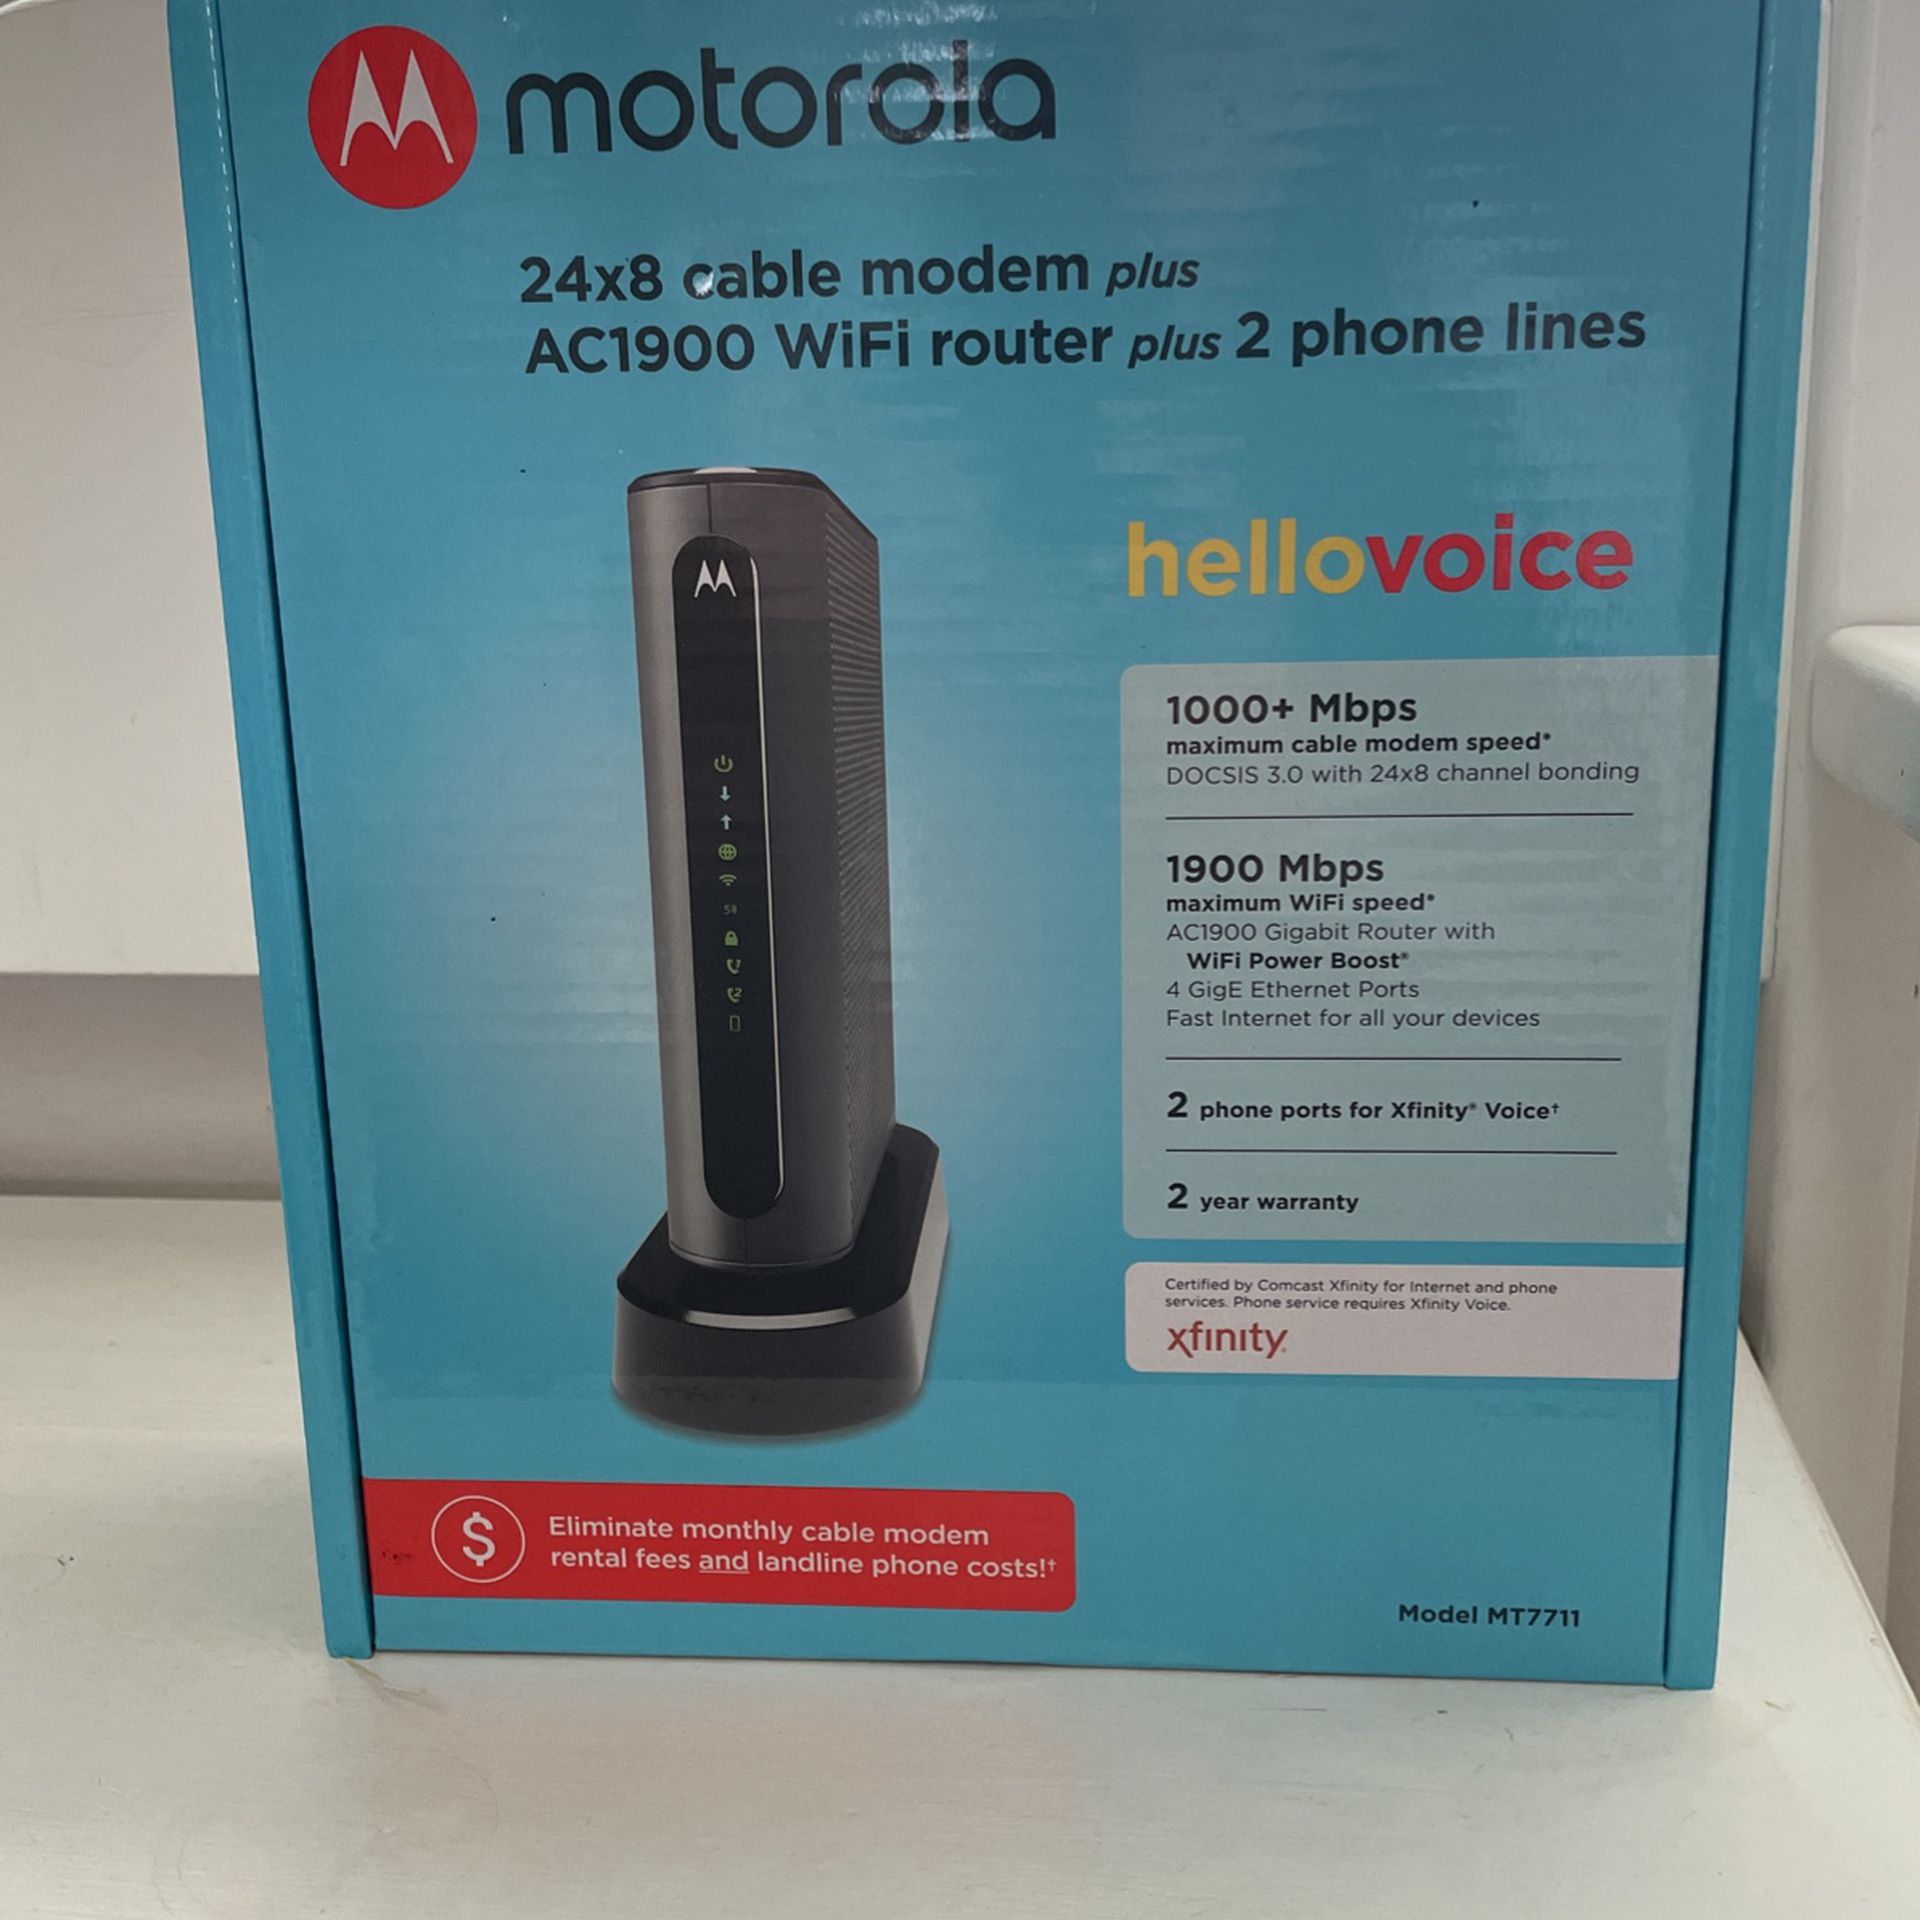 The Motorola MT7711 modem-router combo Loop